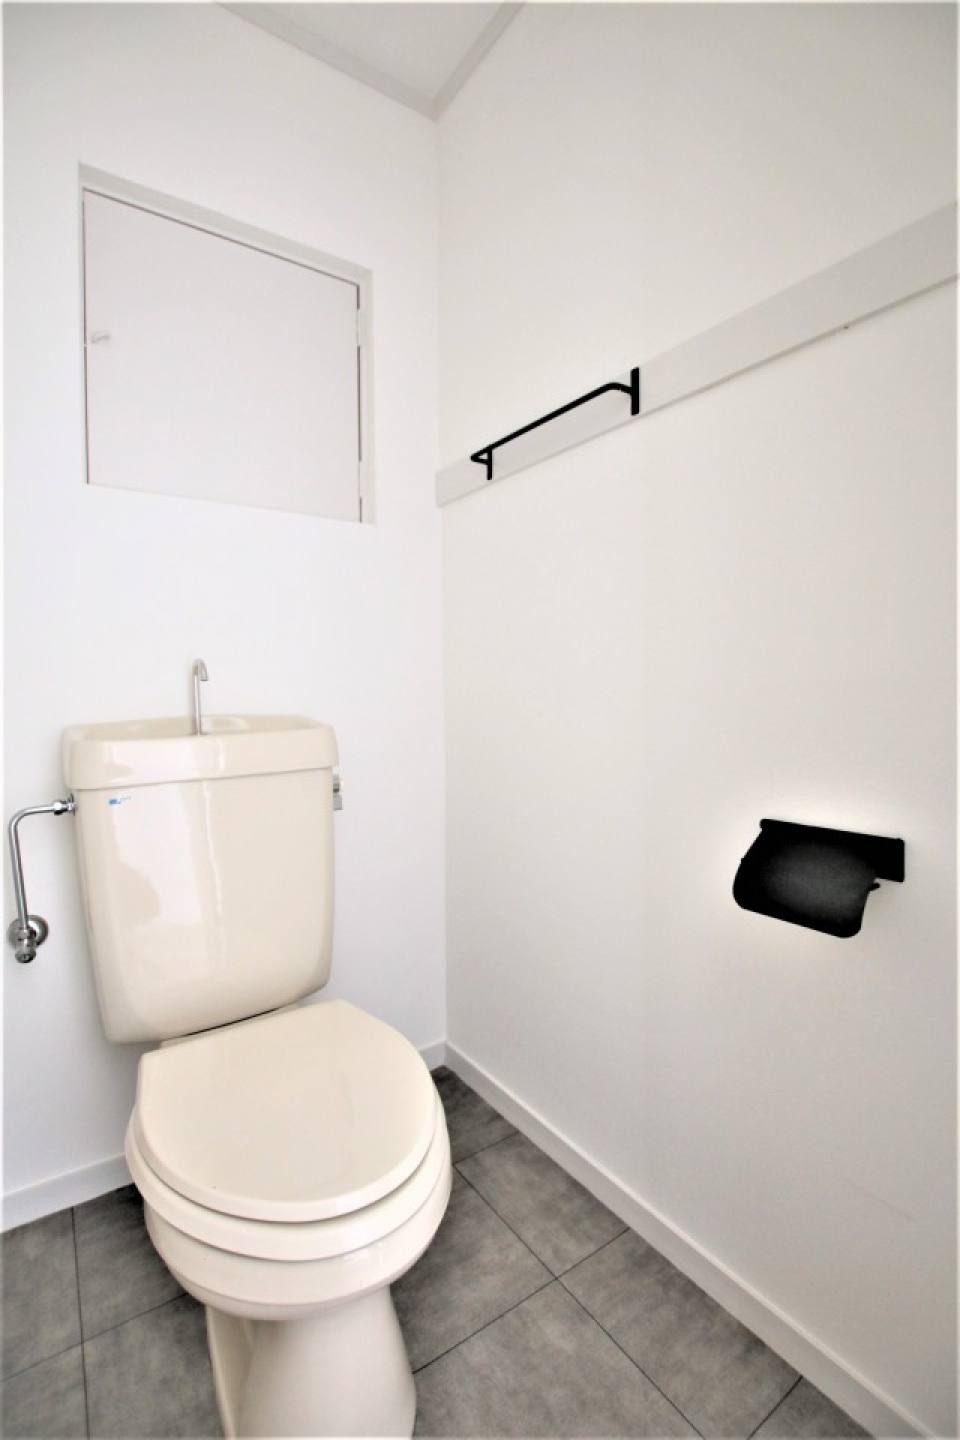 アイアンのホルダーが良い感じのトイレは温水洗浄便座に変更するようです。